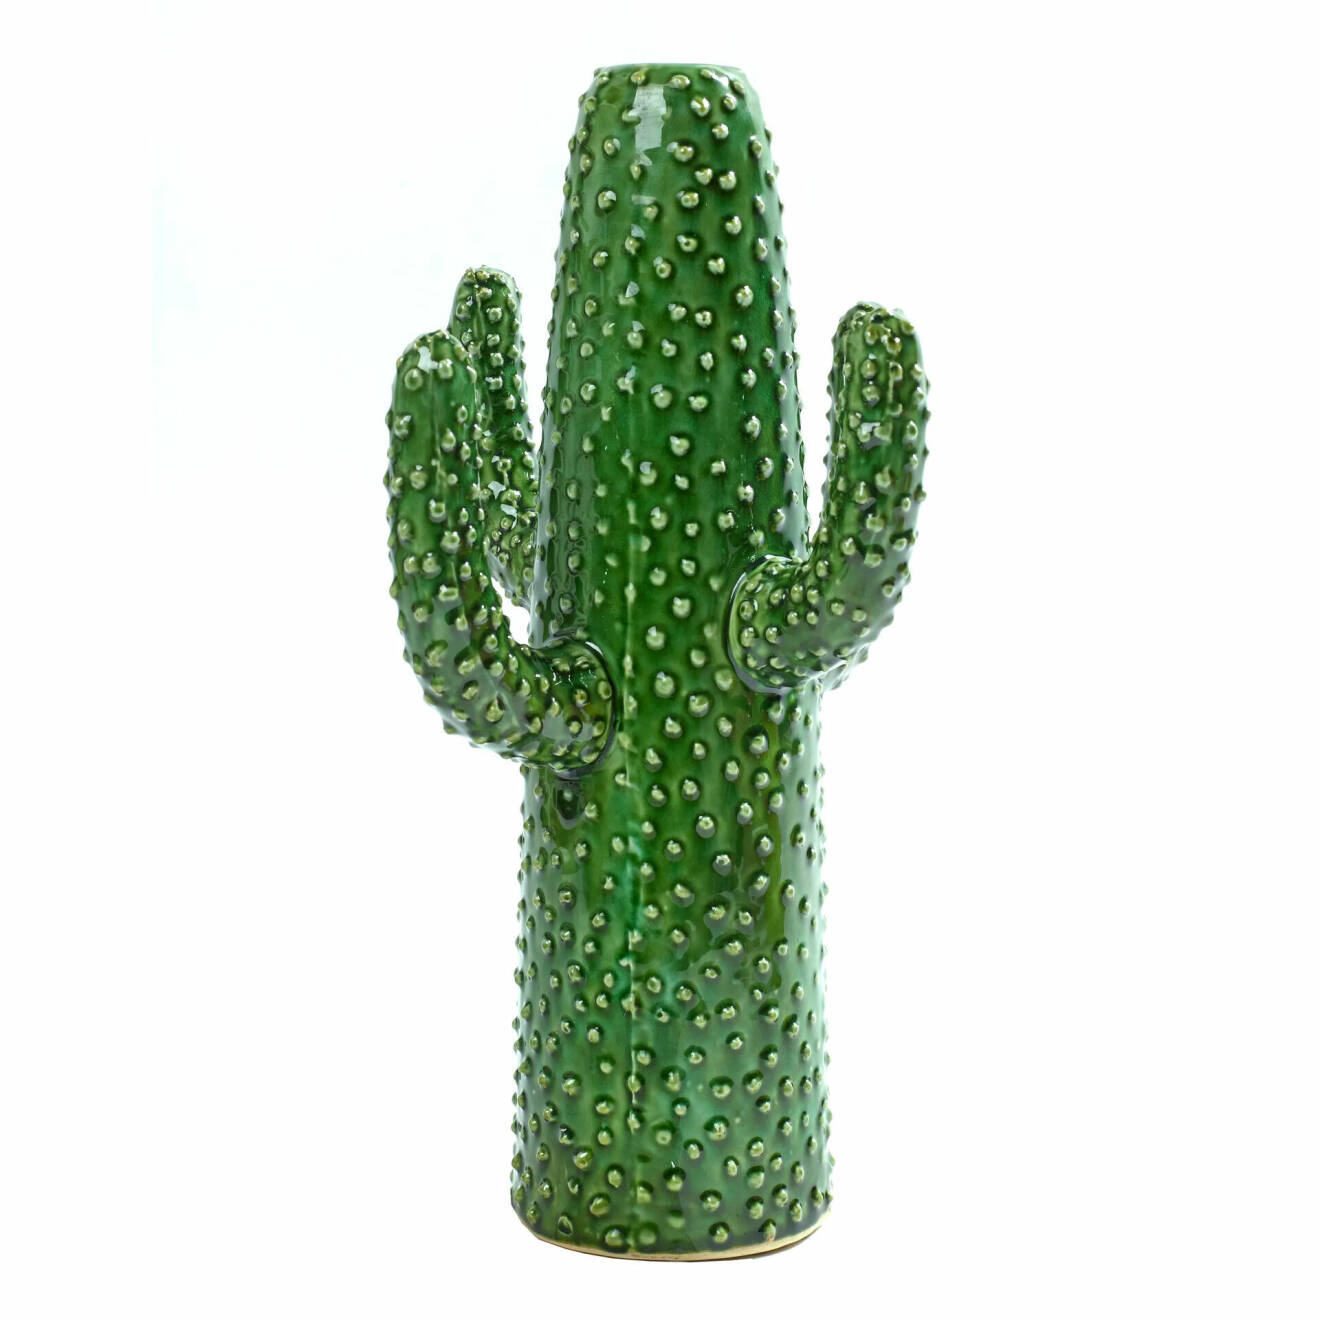 Grön vas som är formad som en kaktus, från Serax.